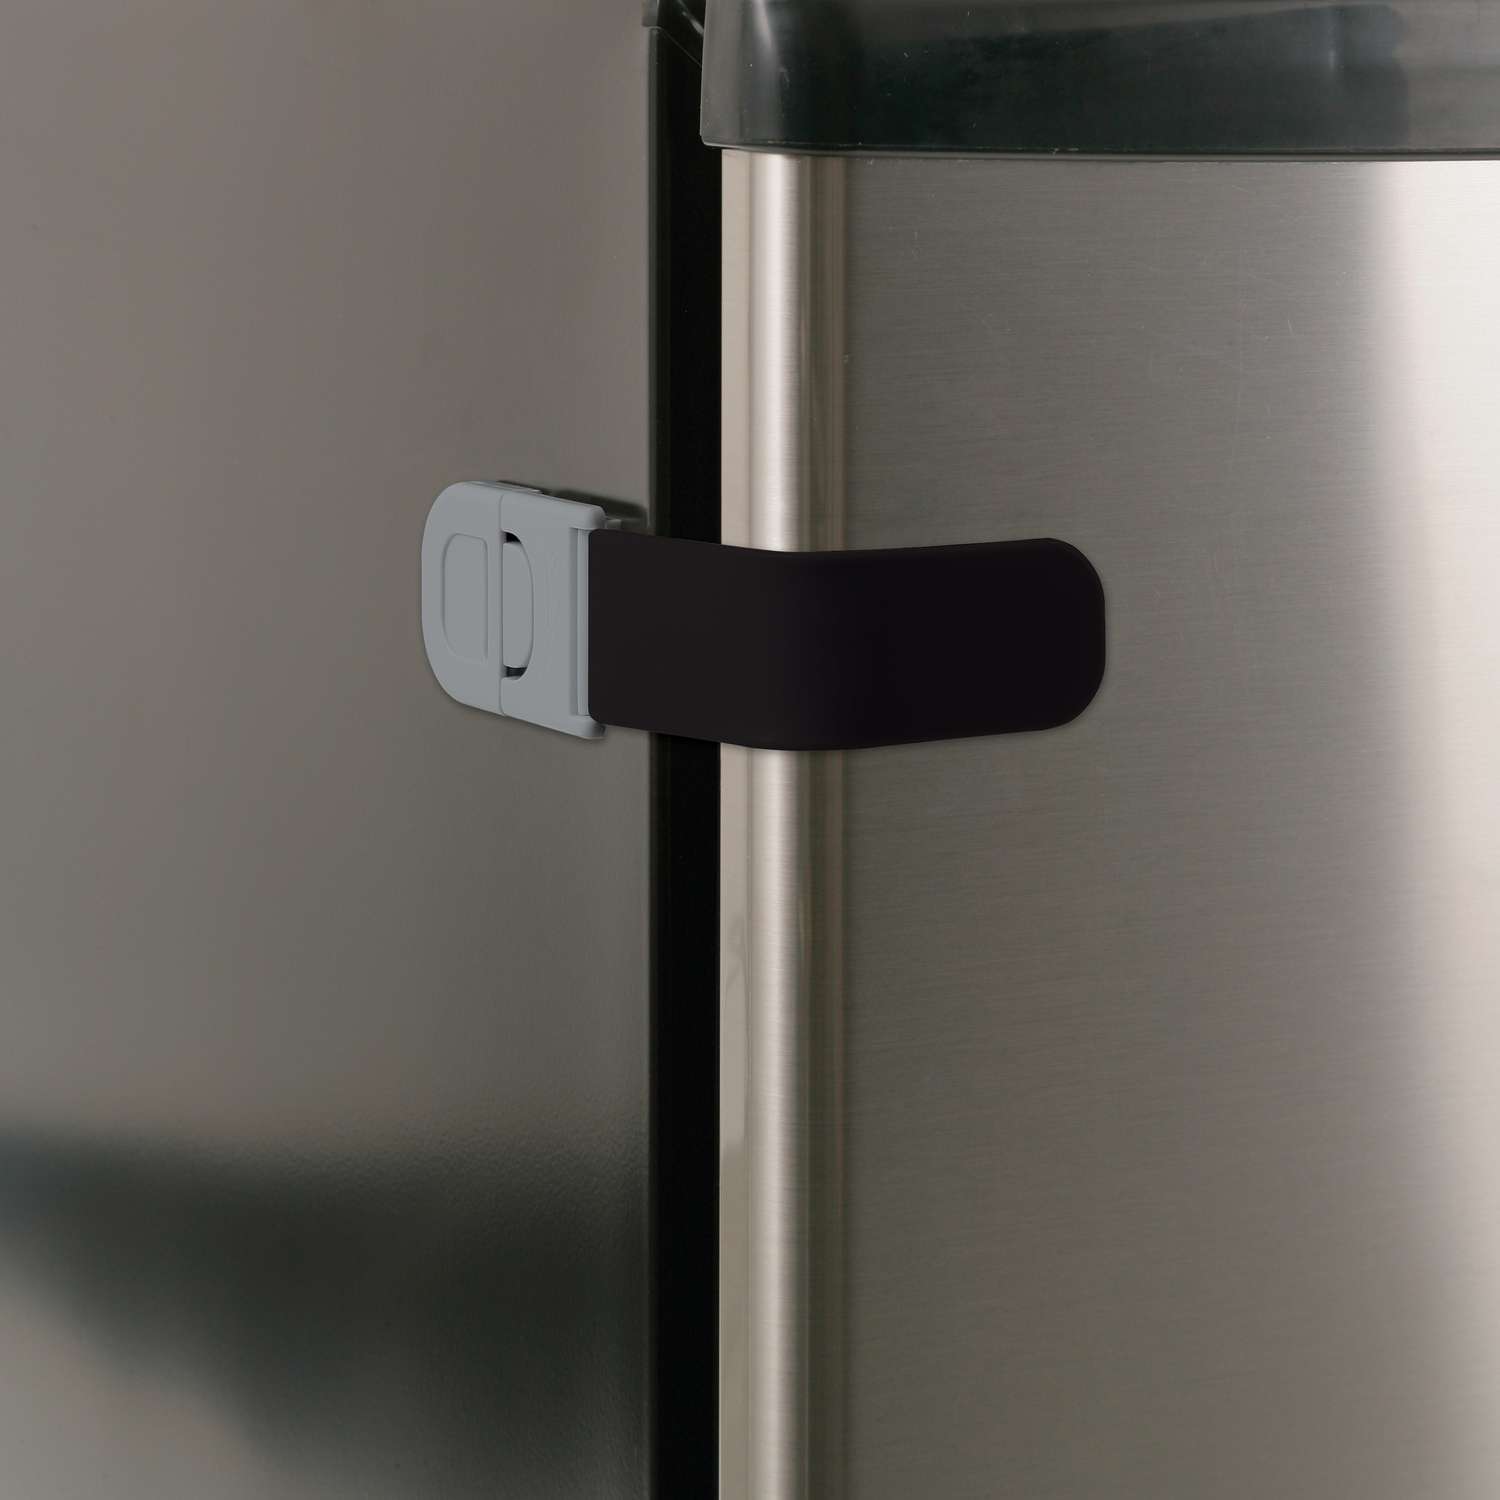 Refrigerator Open Proof Safety Lock Security Cabinet Door Locks for Kitchen  Household Dishware Baby Proofing Door Locker - AliExpress